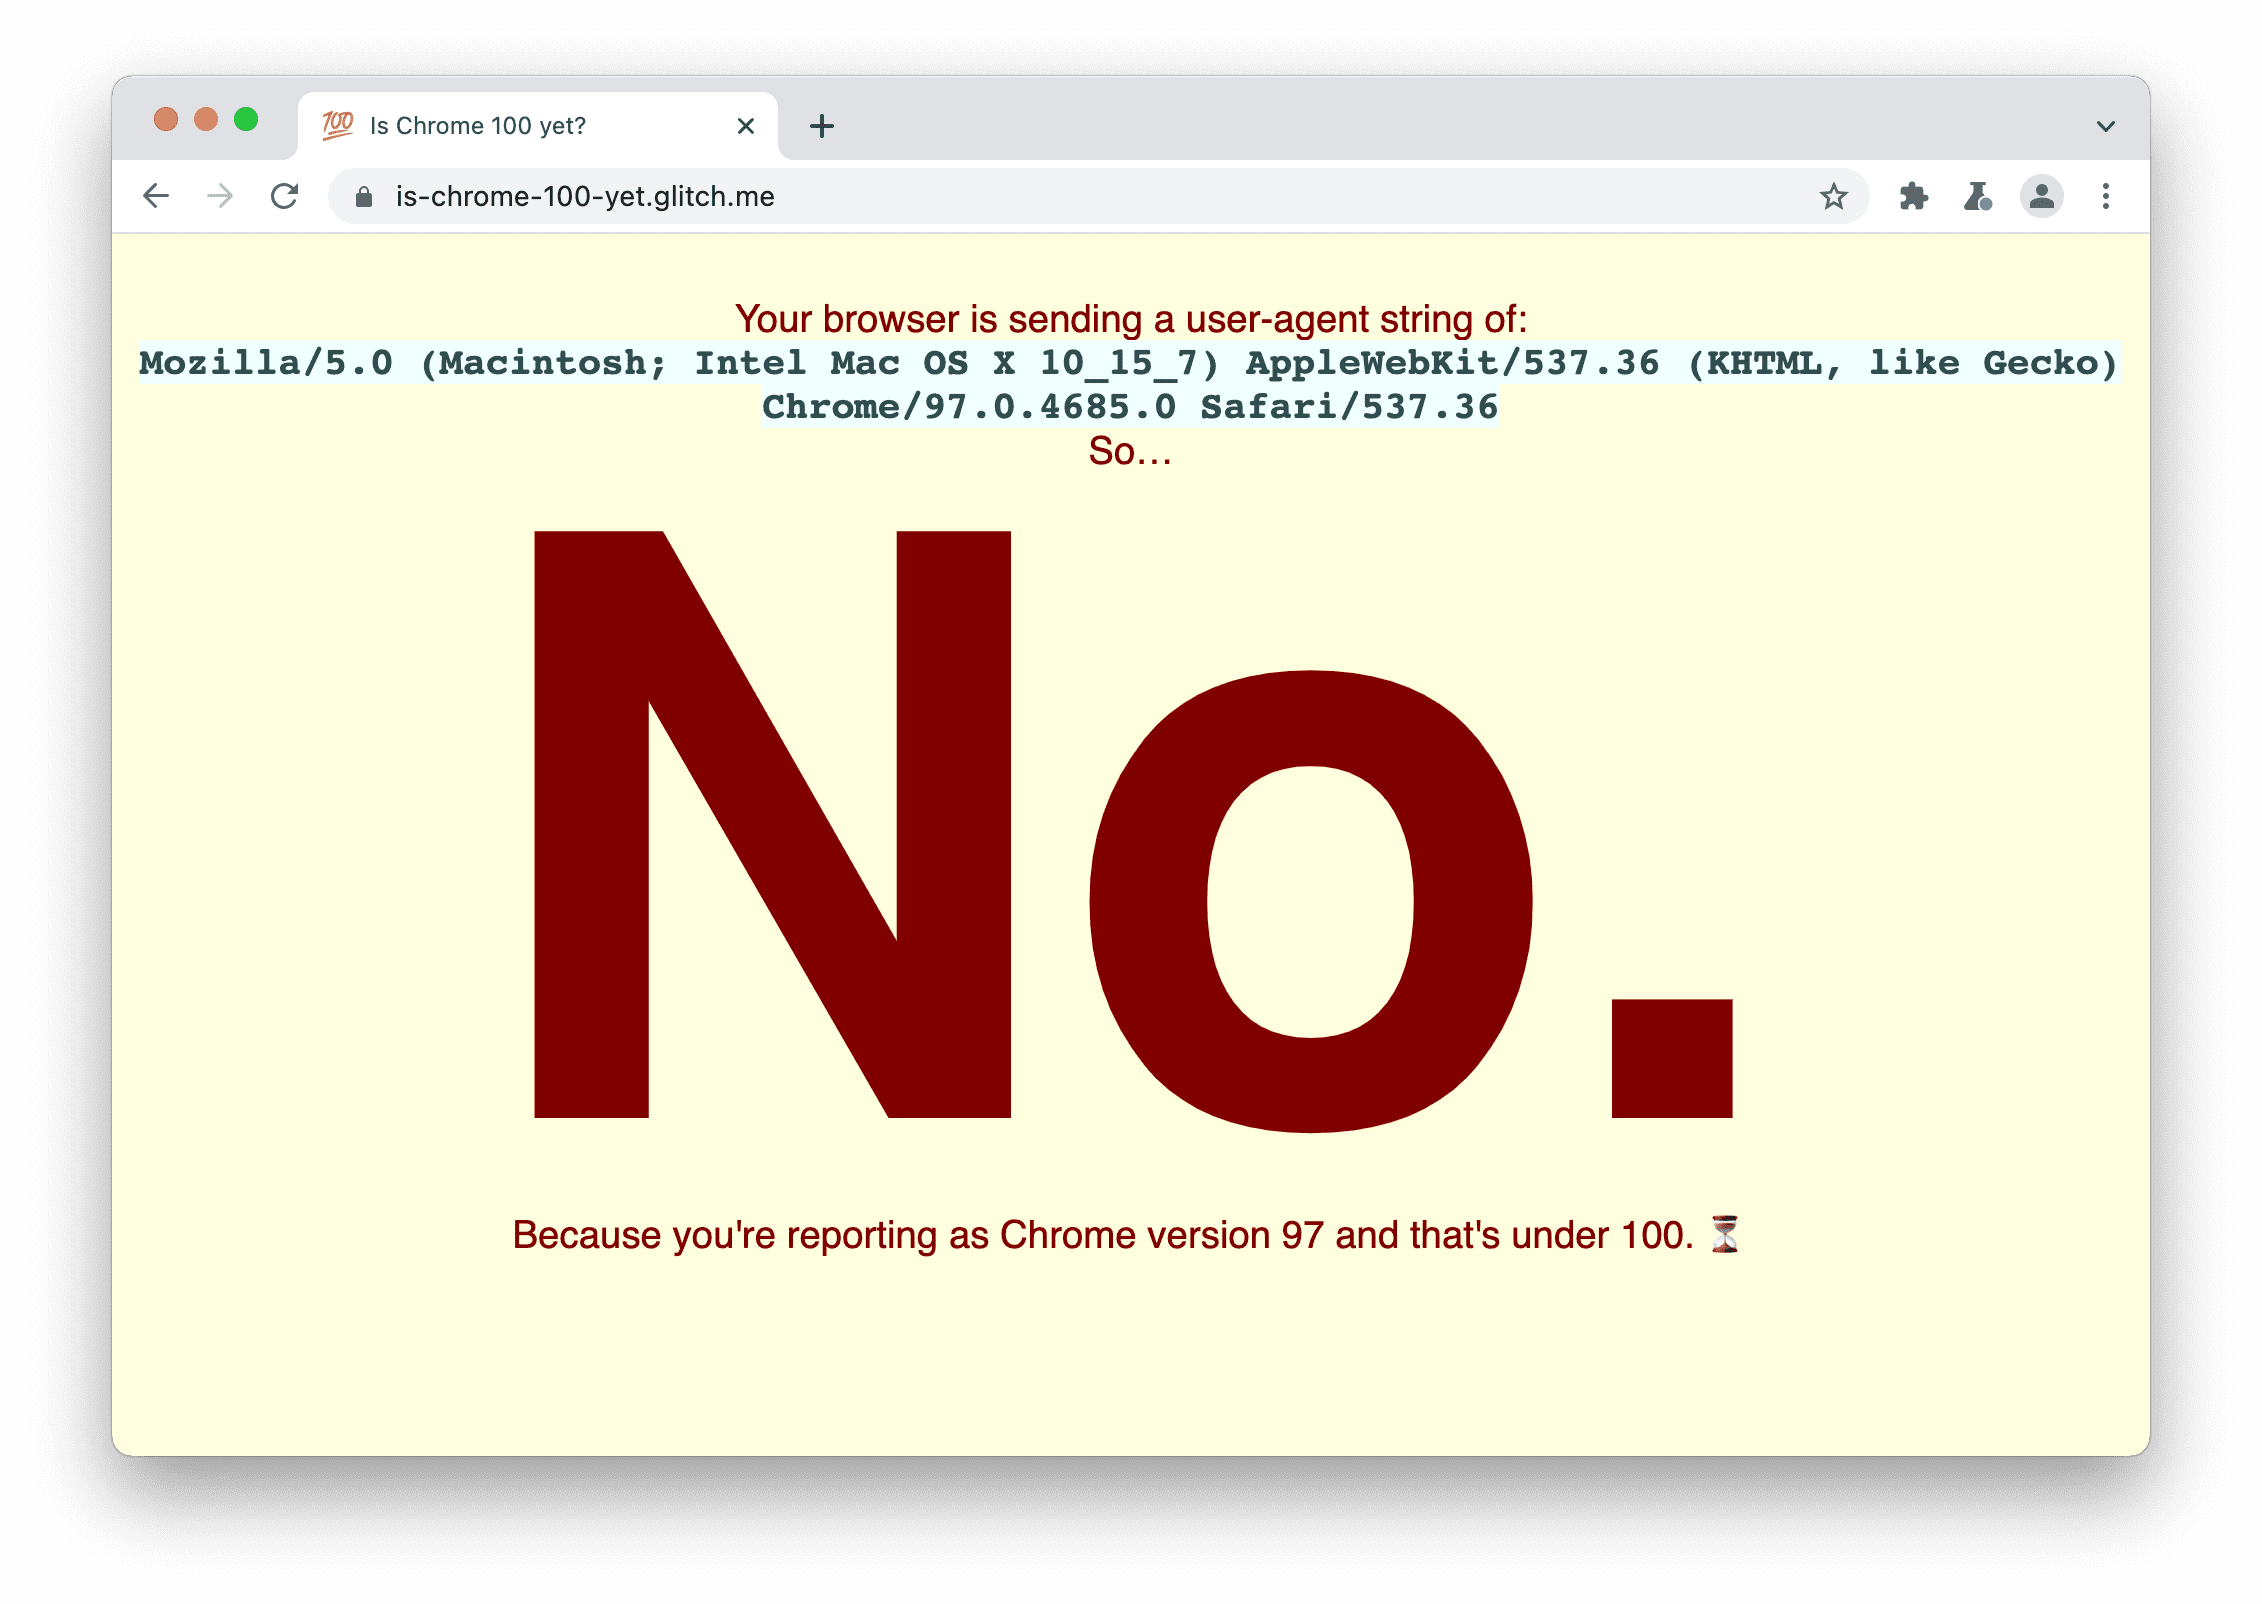 Un sito che controlla se il browser invia la stringa 100 dello user agent. Viene visualizzato il messaggio: No, perché la versione di Chrome è 97 e inferiore alla 100.